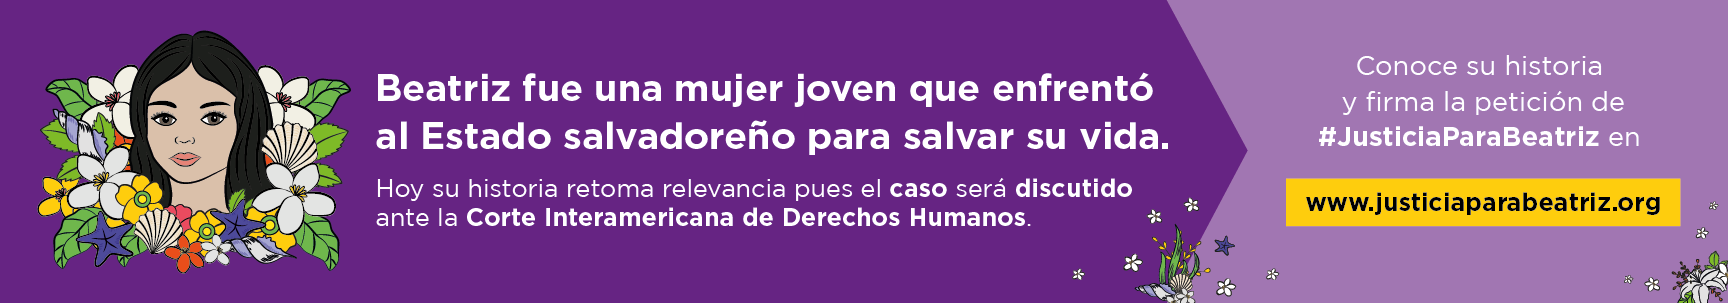 Justicia para Beatriz en El Salvador, Agrupación Ciudadana por la Despenalización del Aborto